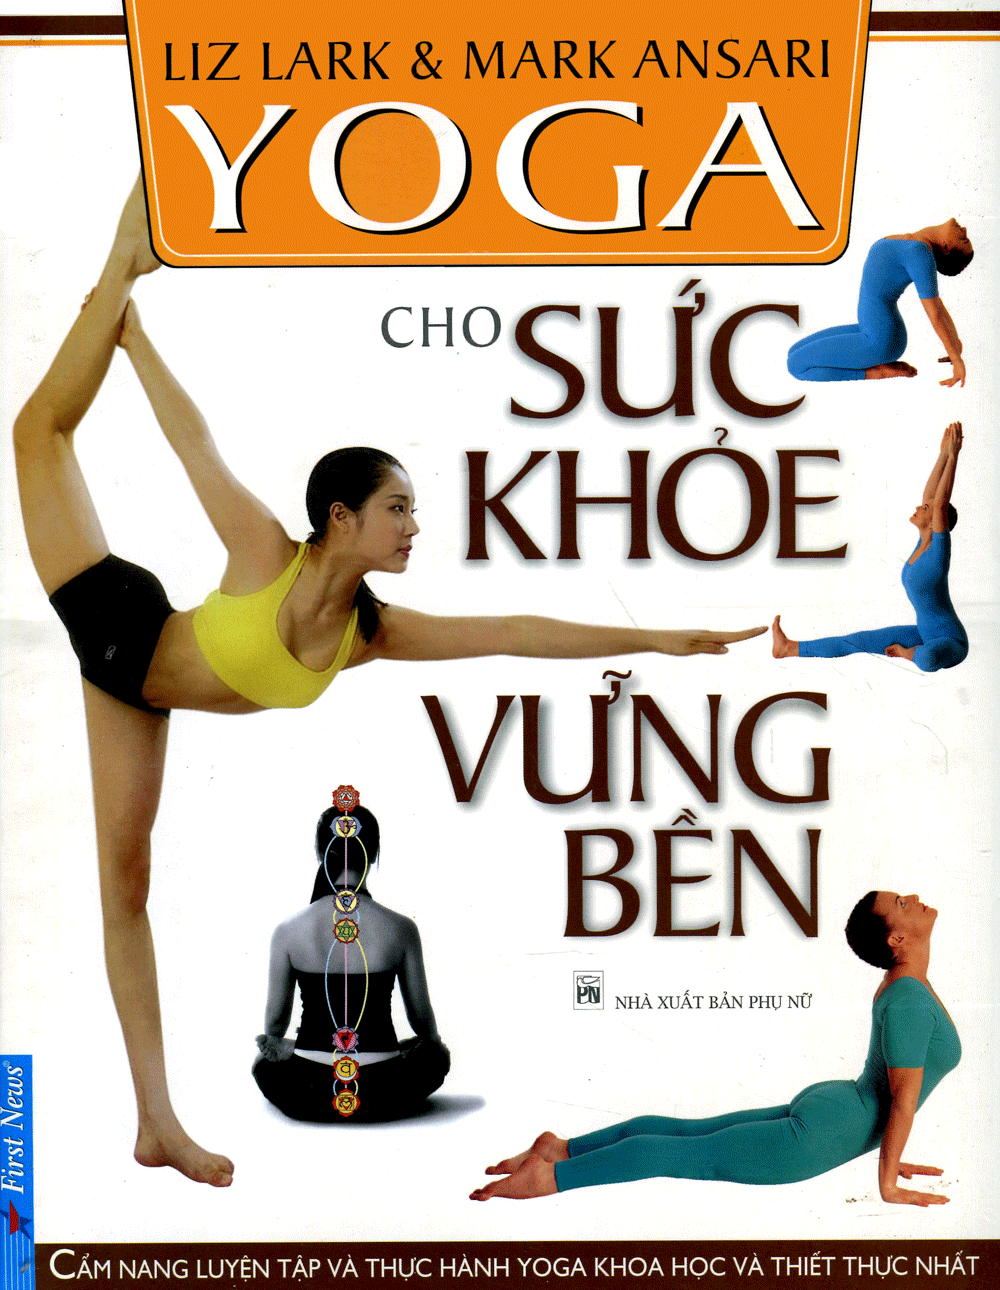 sach yoga cho suc khoe vung ben 8 cuốn sách hay về sức khỏe giúp bạn xây dựng lối sống lành mạnh và khoa học